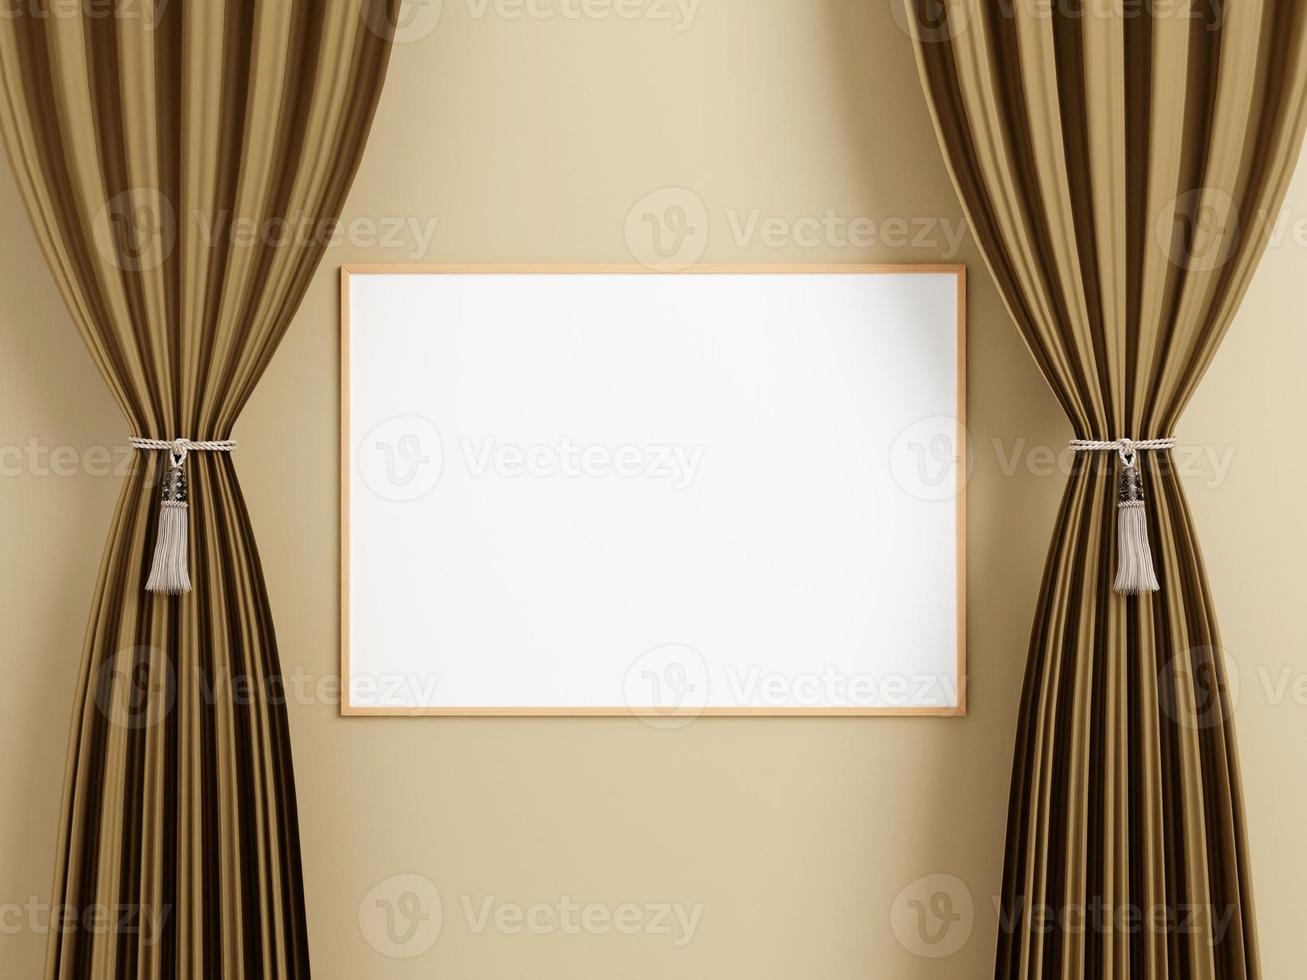 cartaz de madeira horizontal minimalista ou maquete de moldura na parede entre a cortina. foto